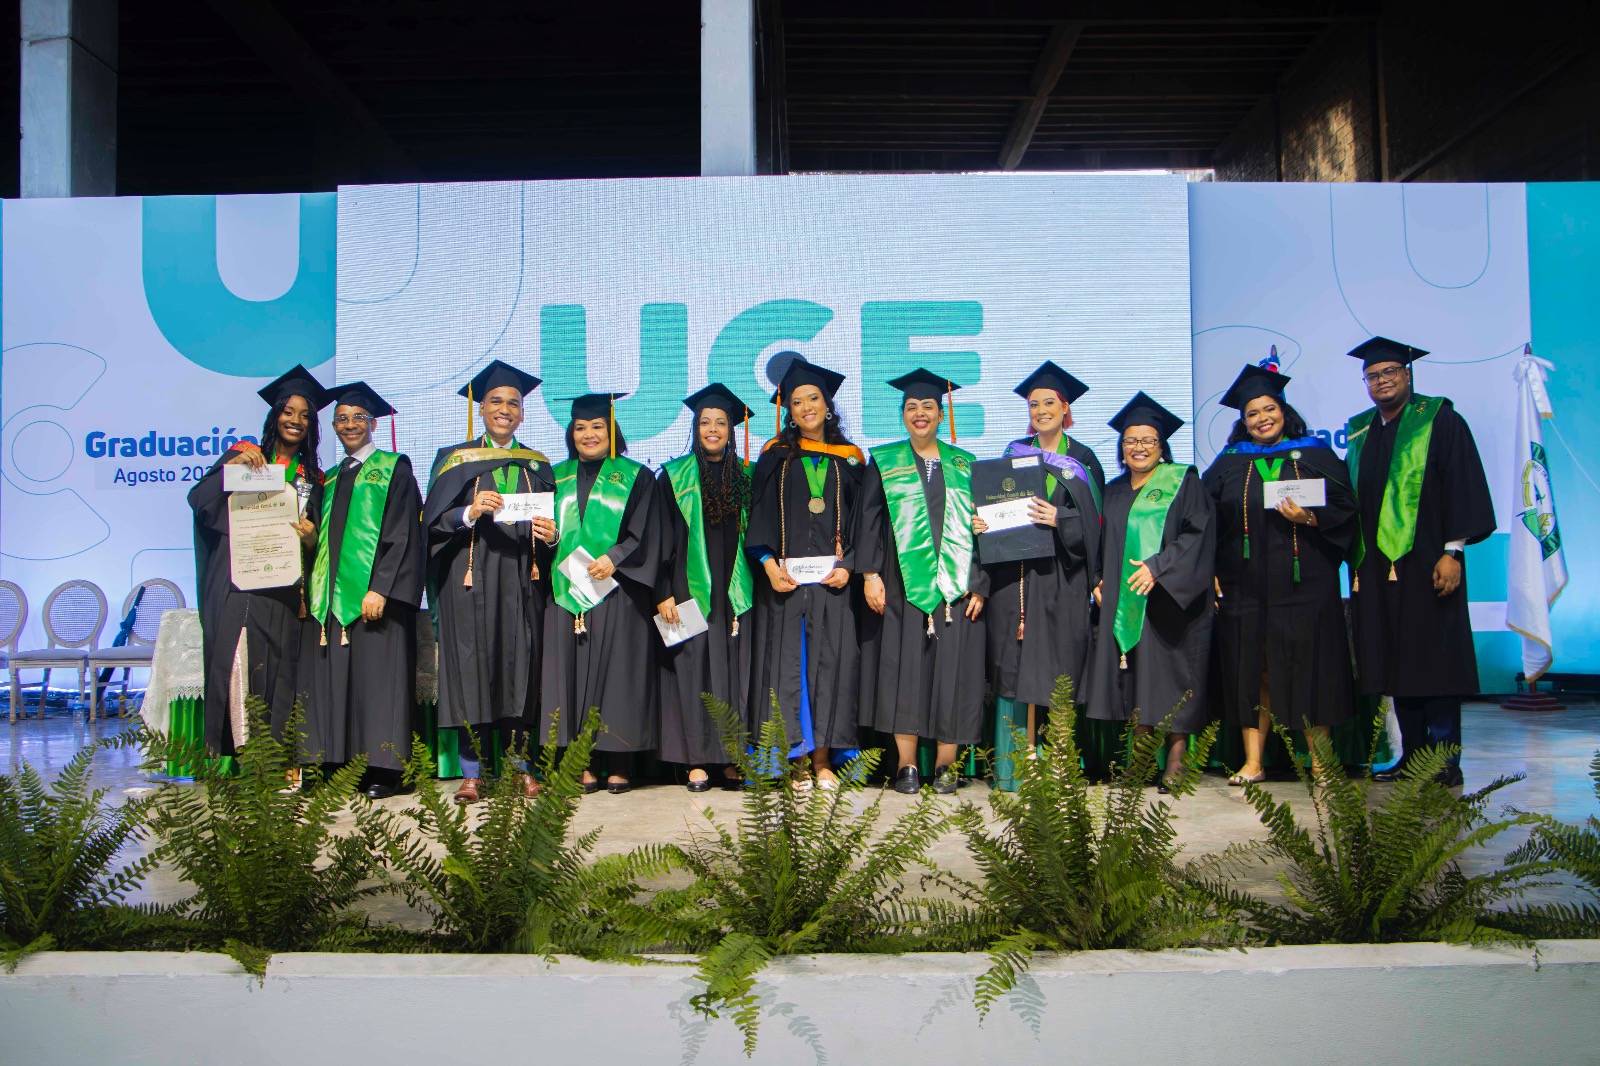 Graduados de la Universidad Central del Este